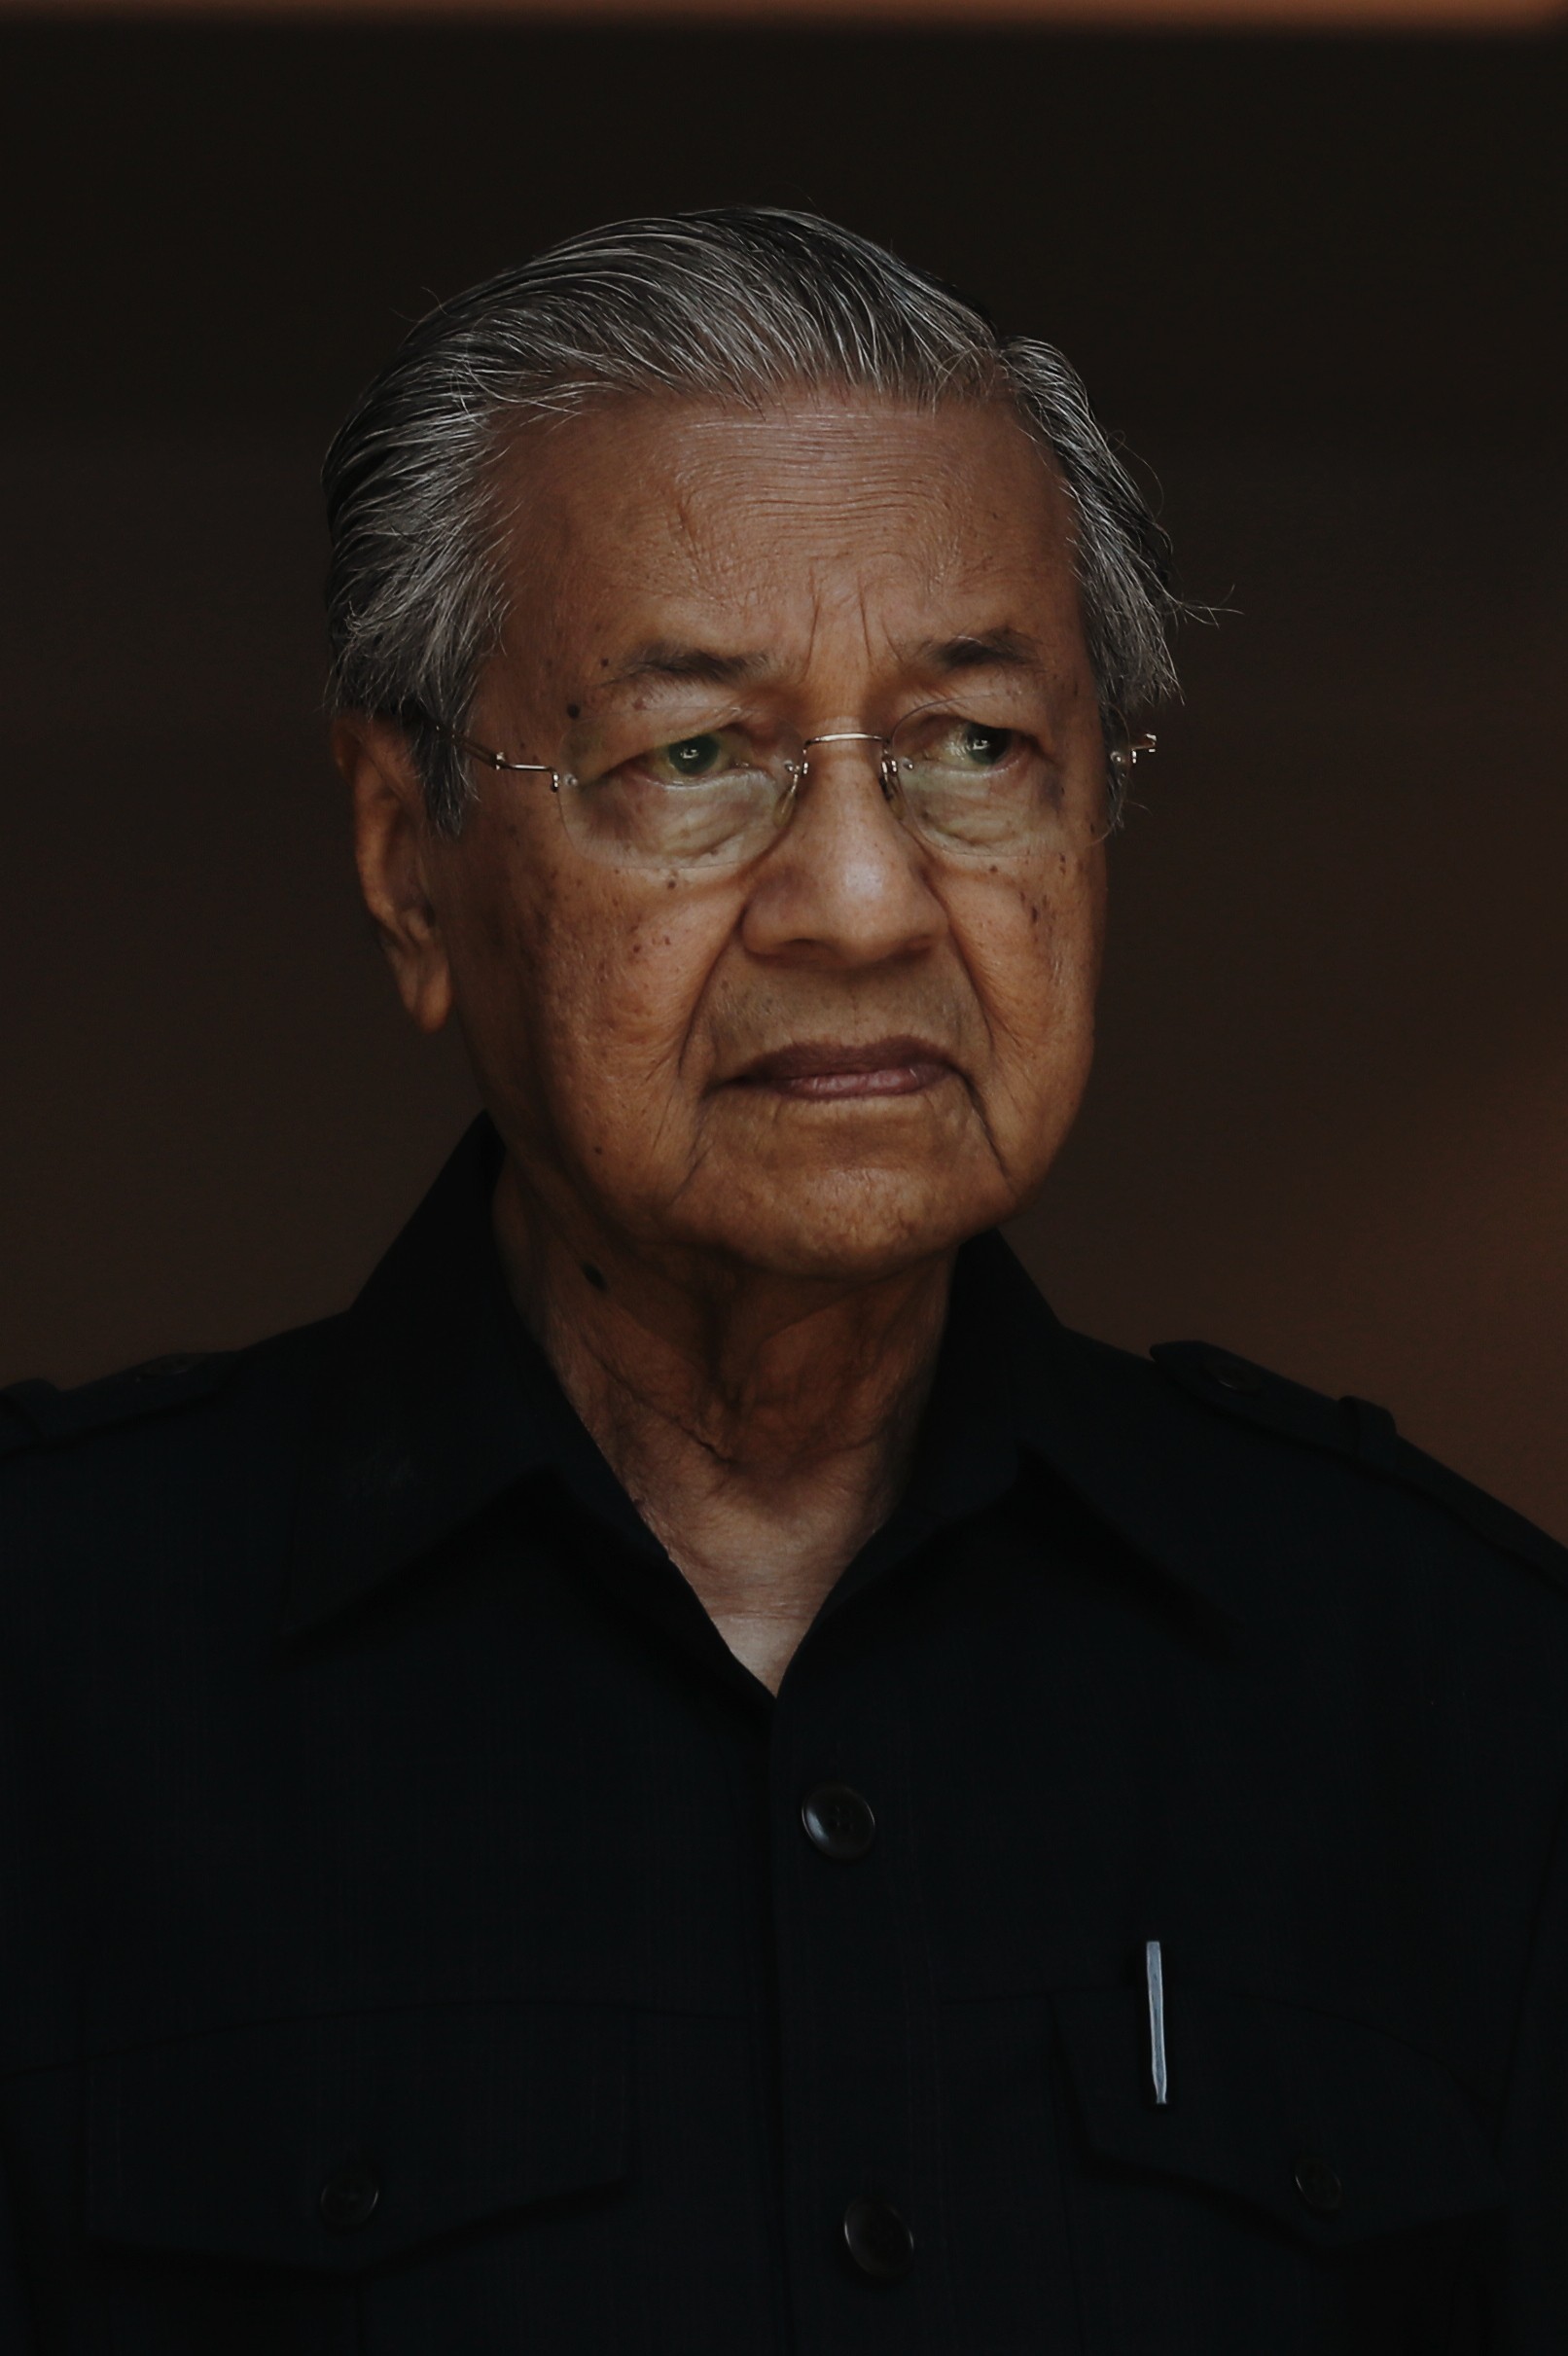 马来西亚总理马哈蒂尔递交辞呈